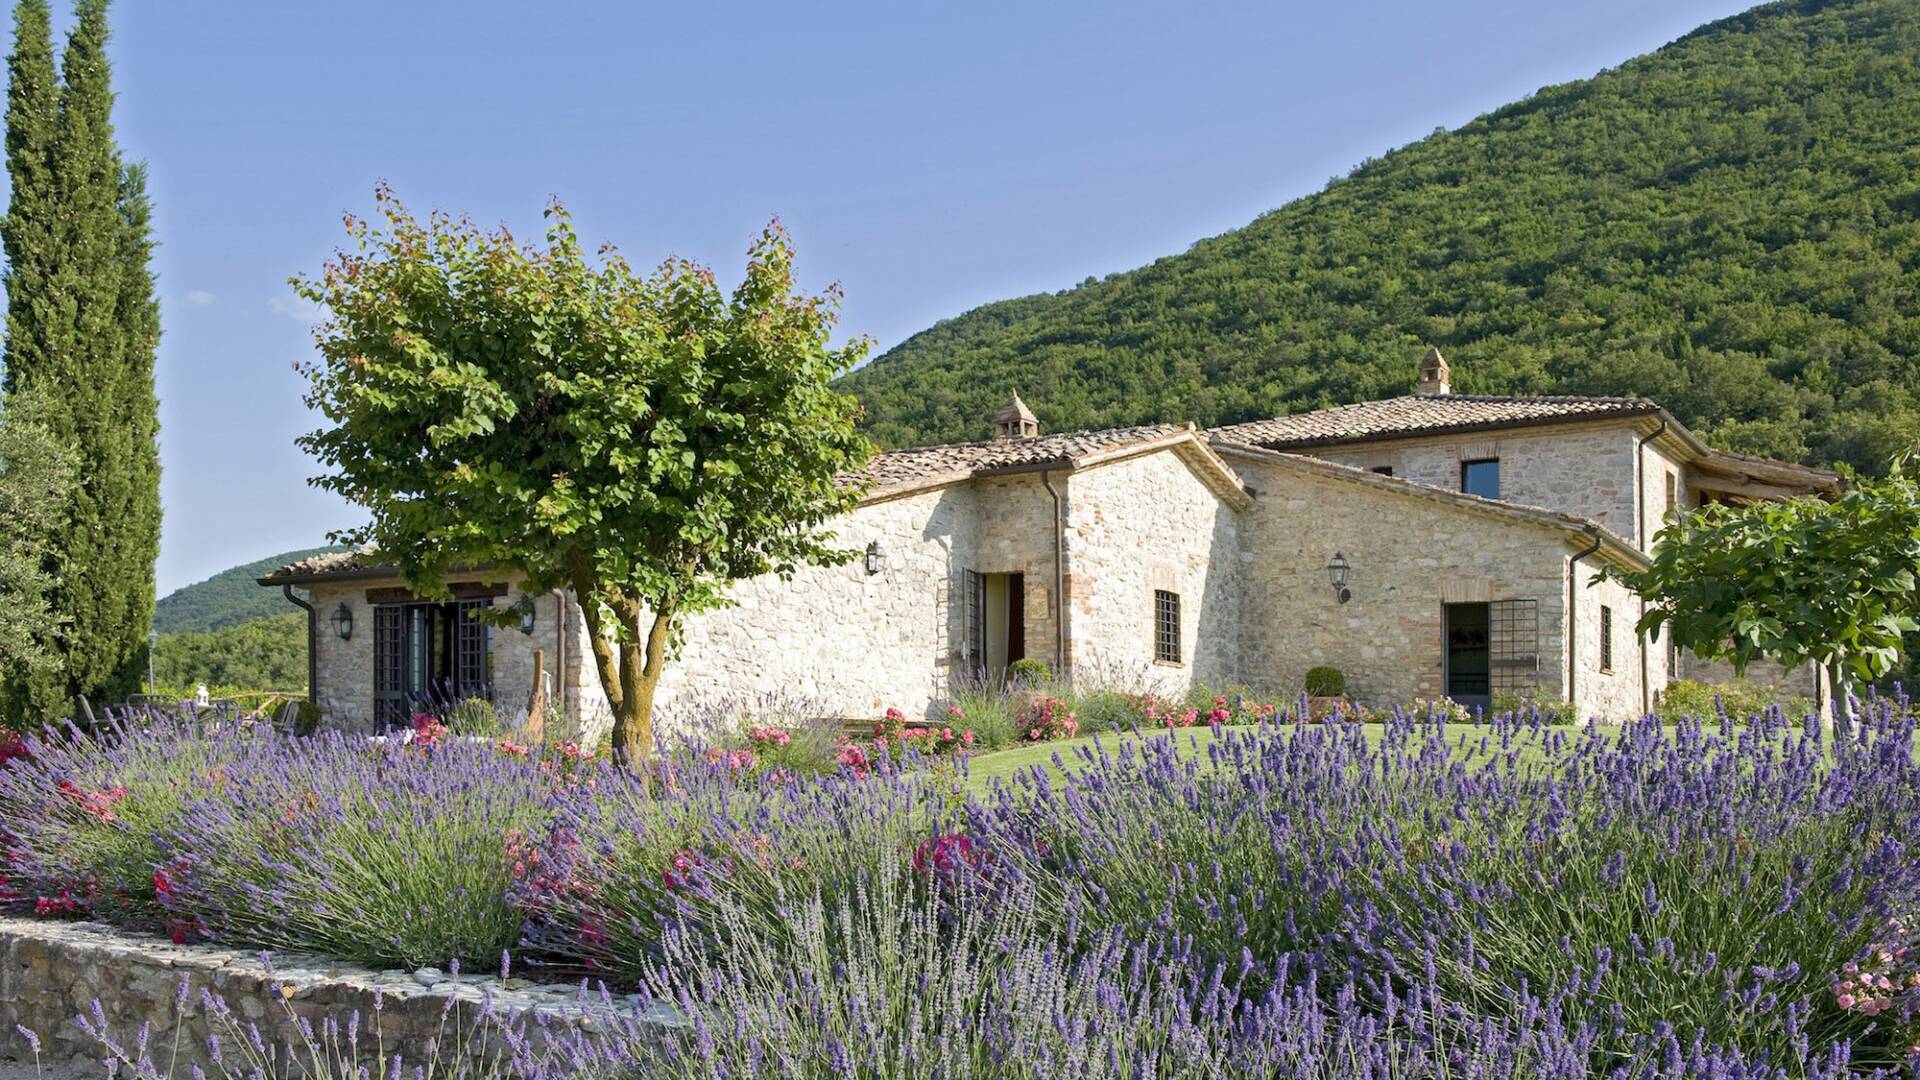 luxury villas rentals in Umbria